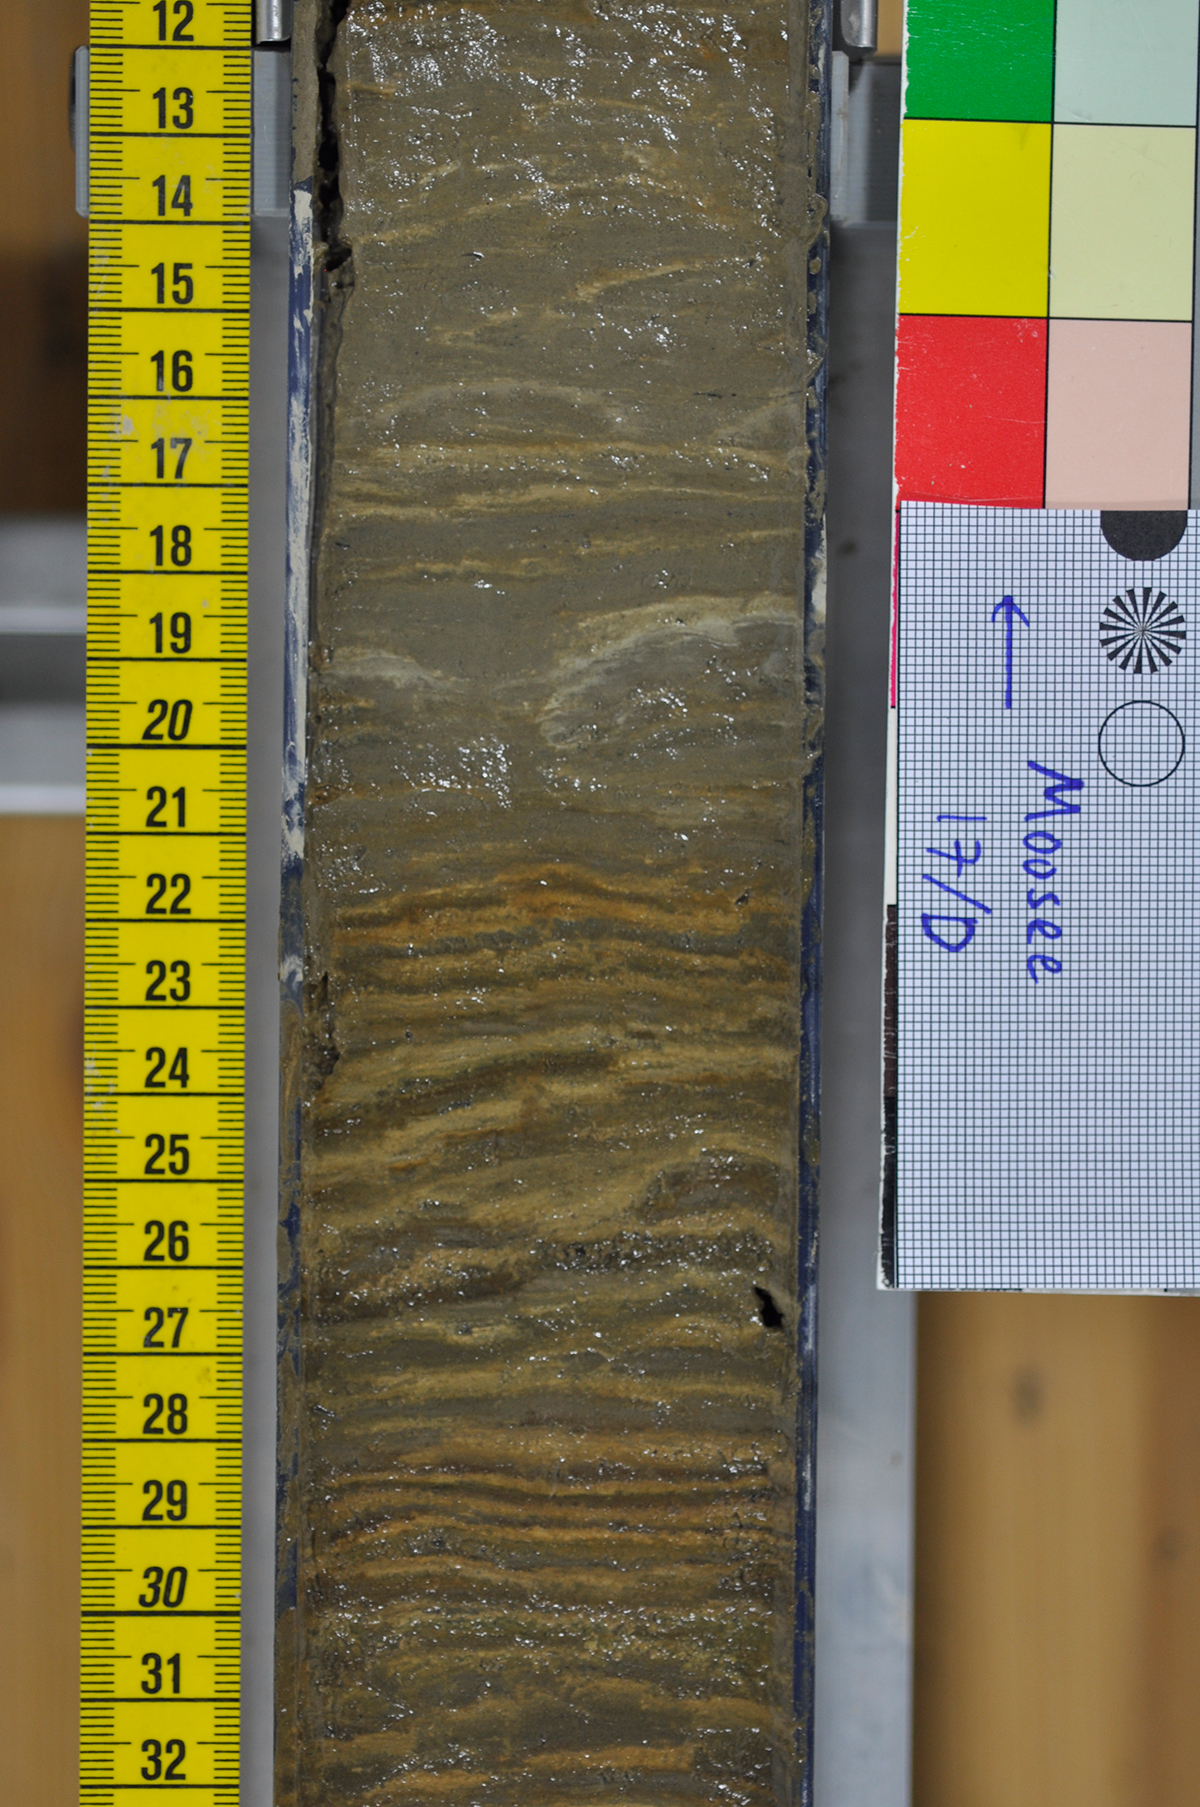 Der aufgeschnittene Sedimentkern zeigt die Schichten, die sich Jahr für Jahr auf dem Boden des Moossees abgelagert haben.